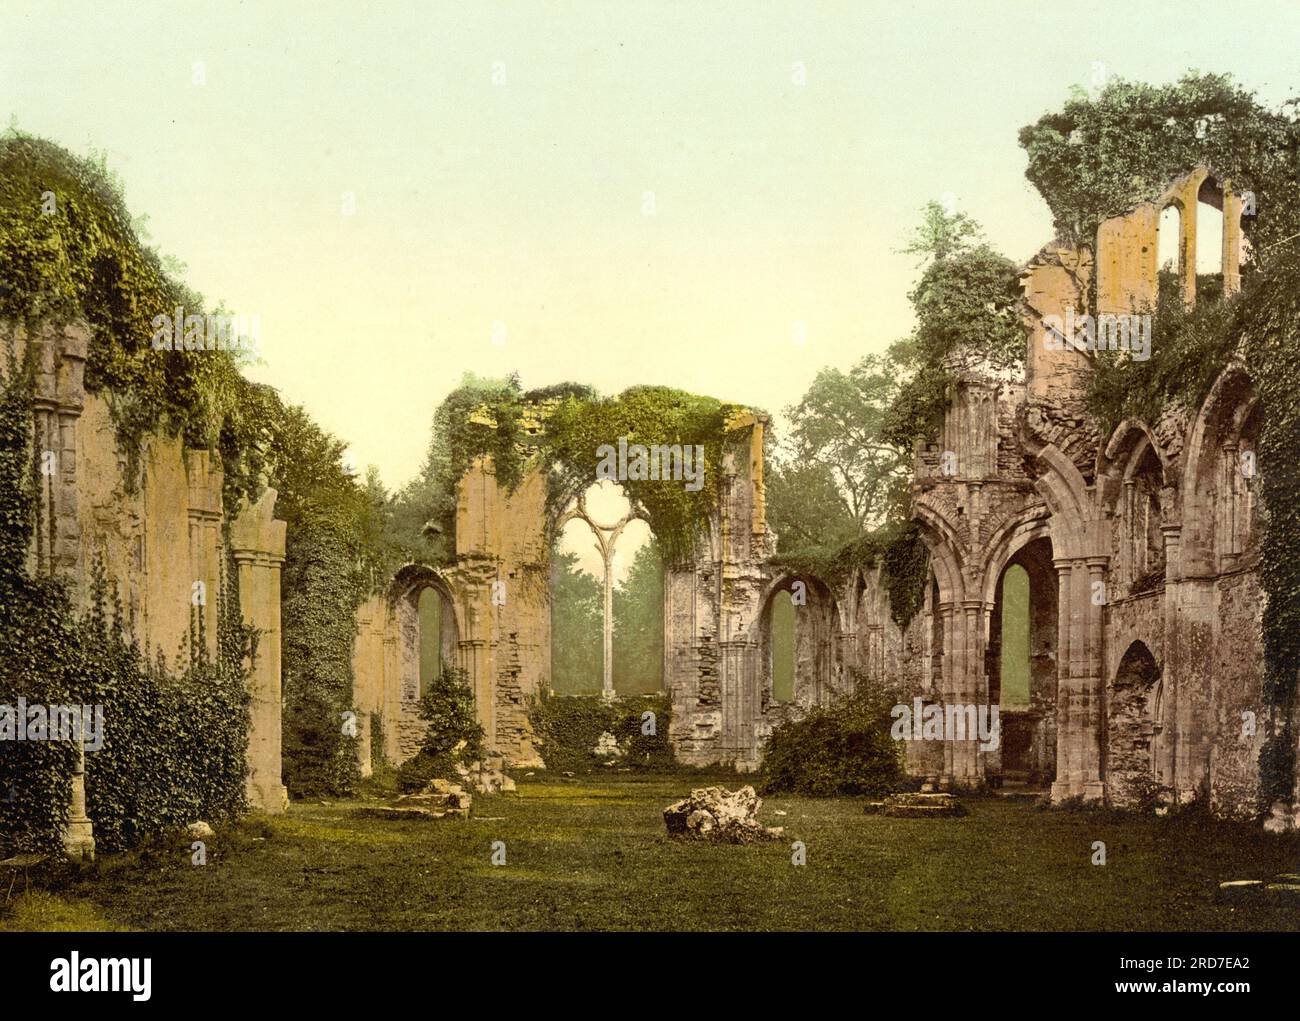 Intérieur, abbaye de Netley, monastère médiéval tardif en ruine dans le village de Netley près de Southampton dans le Hampshire, Angleterre, 1895, reproduction historique, numérique améliorée d'une ancienne gravure photochrome Banque D'Images